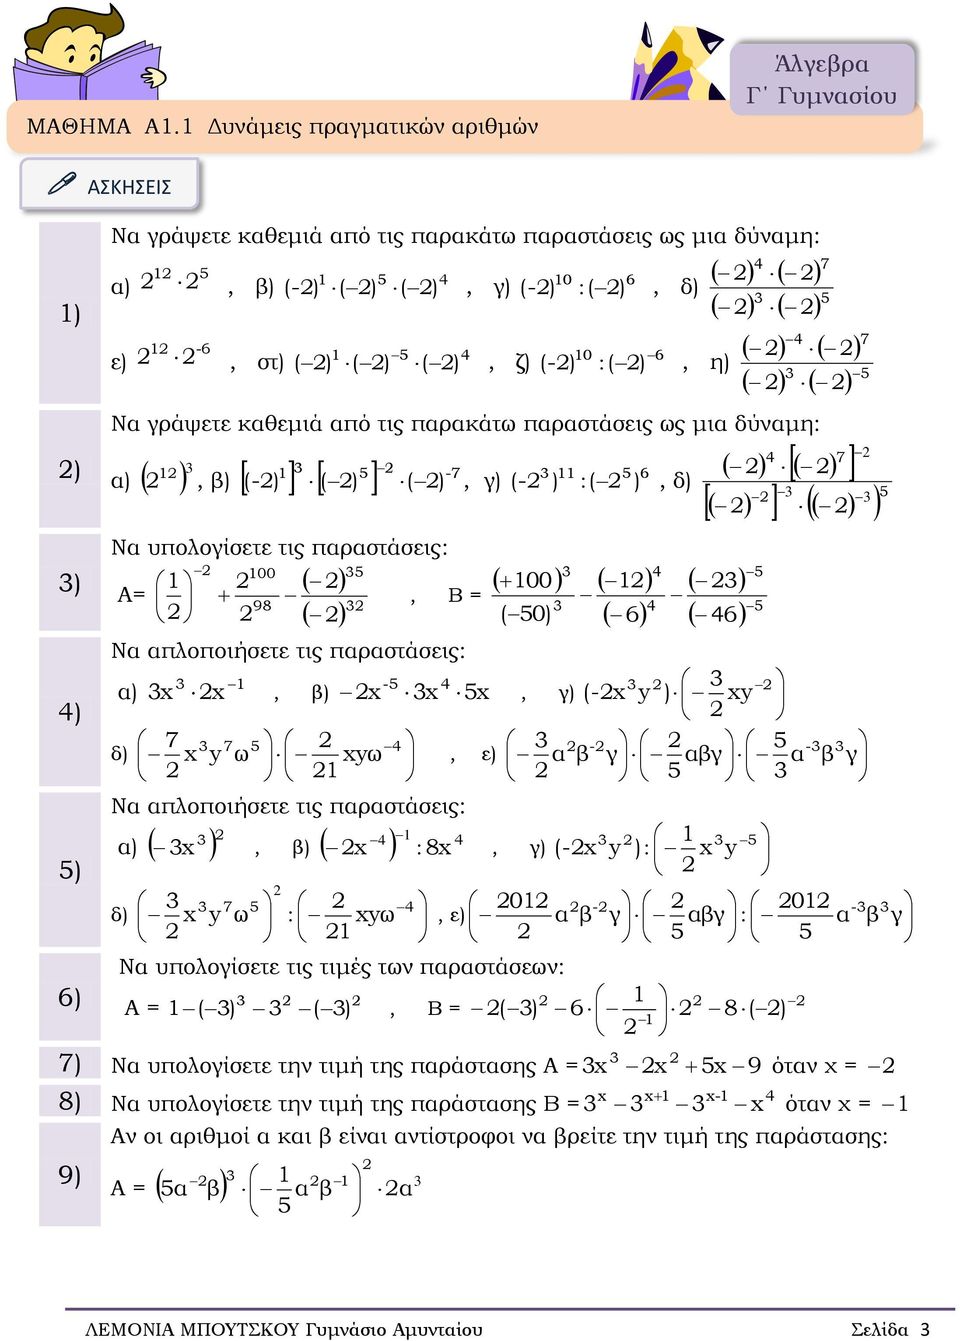 καθεμιά από τις παρακάτω παραστάσεις ως μια δύναμη -7 β) (-) ( ) ( ) Να υπολογίσετε τις παραστάσεις Α= 00 98 γ) (- ) ( ) δ) 00 Β = ( 0) 7 Να απλοποιήσετε τις παραστάσεις - β) γ) (- ) 7 δ) 7 ω ω ε) -